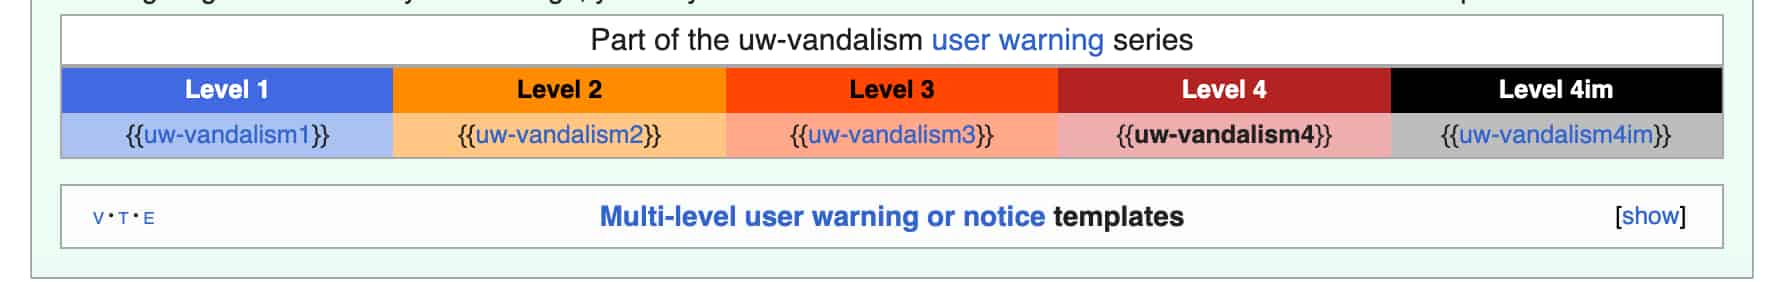 uw-vandalism user warning series